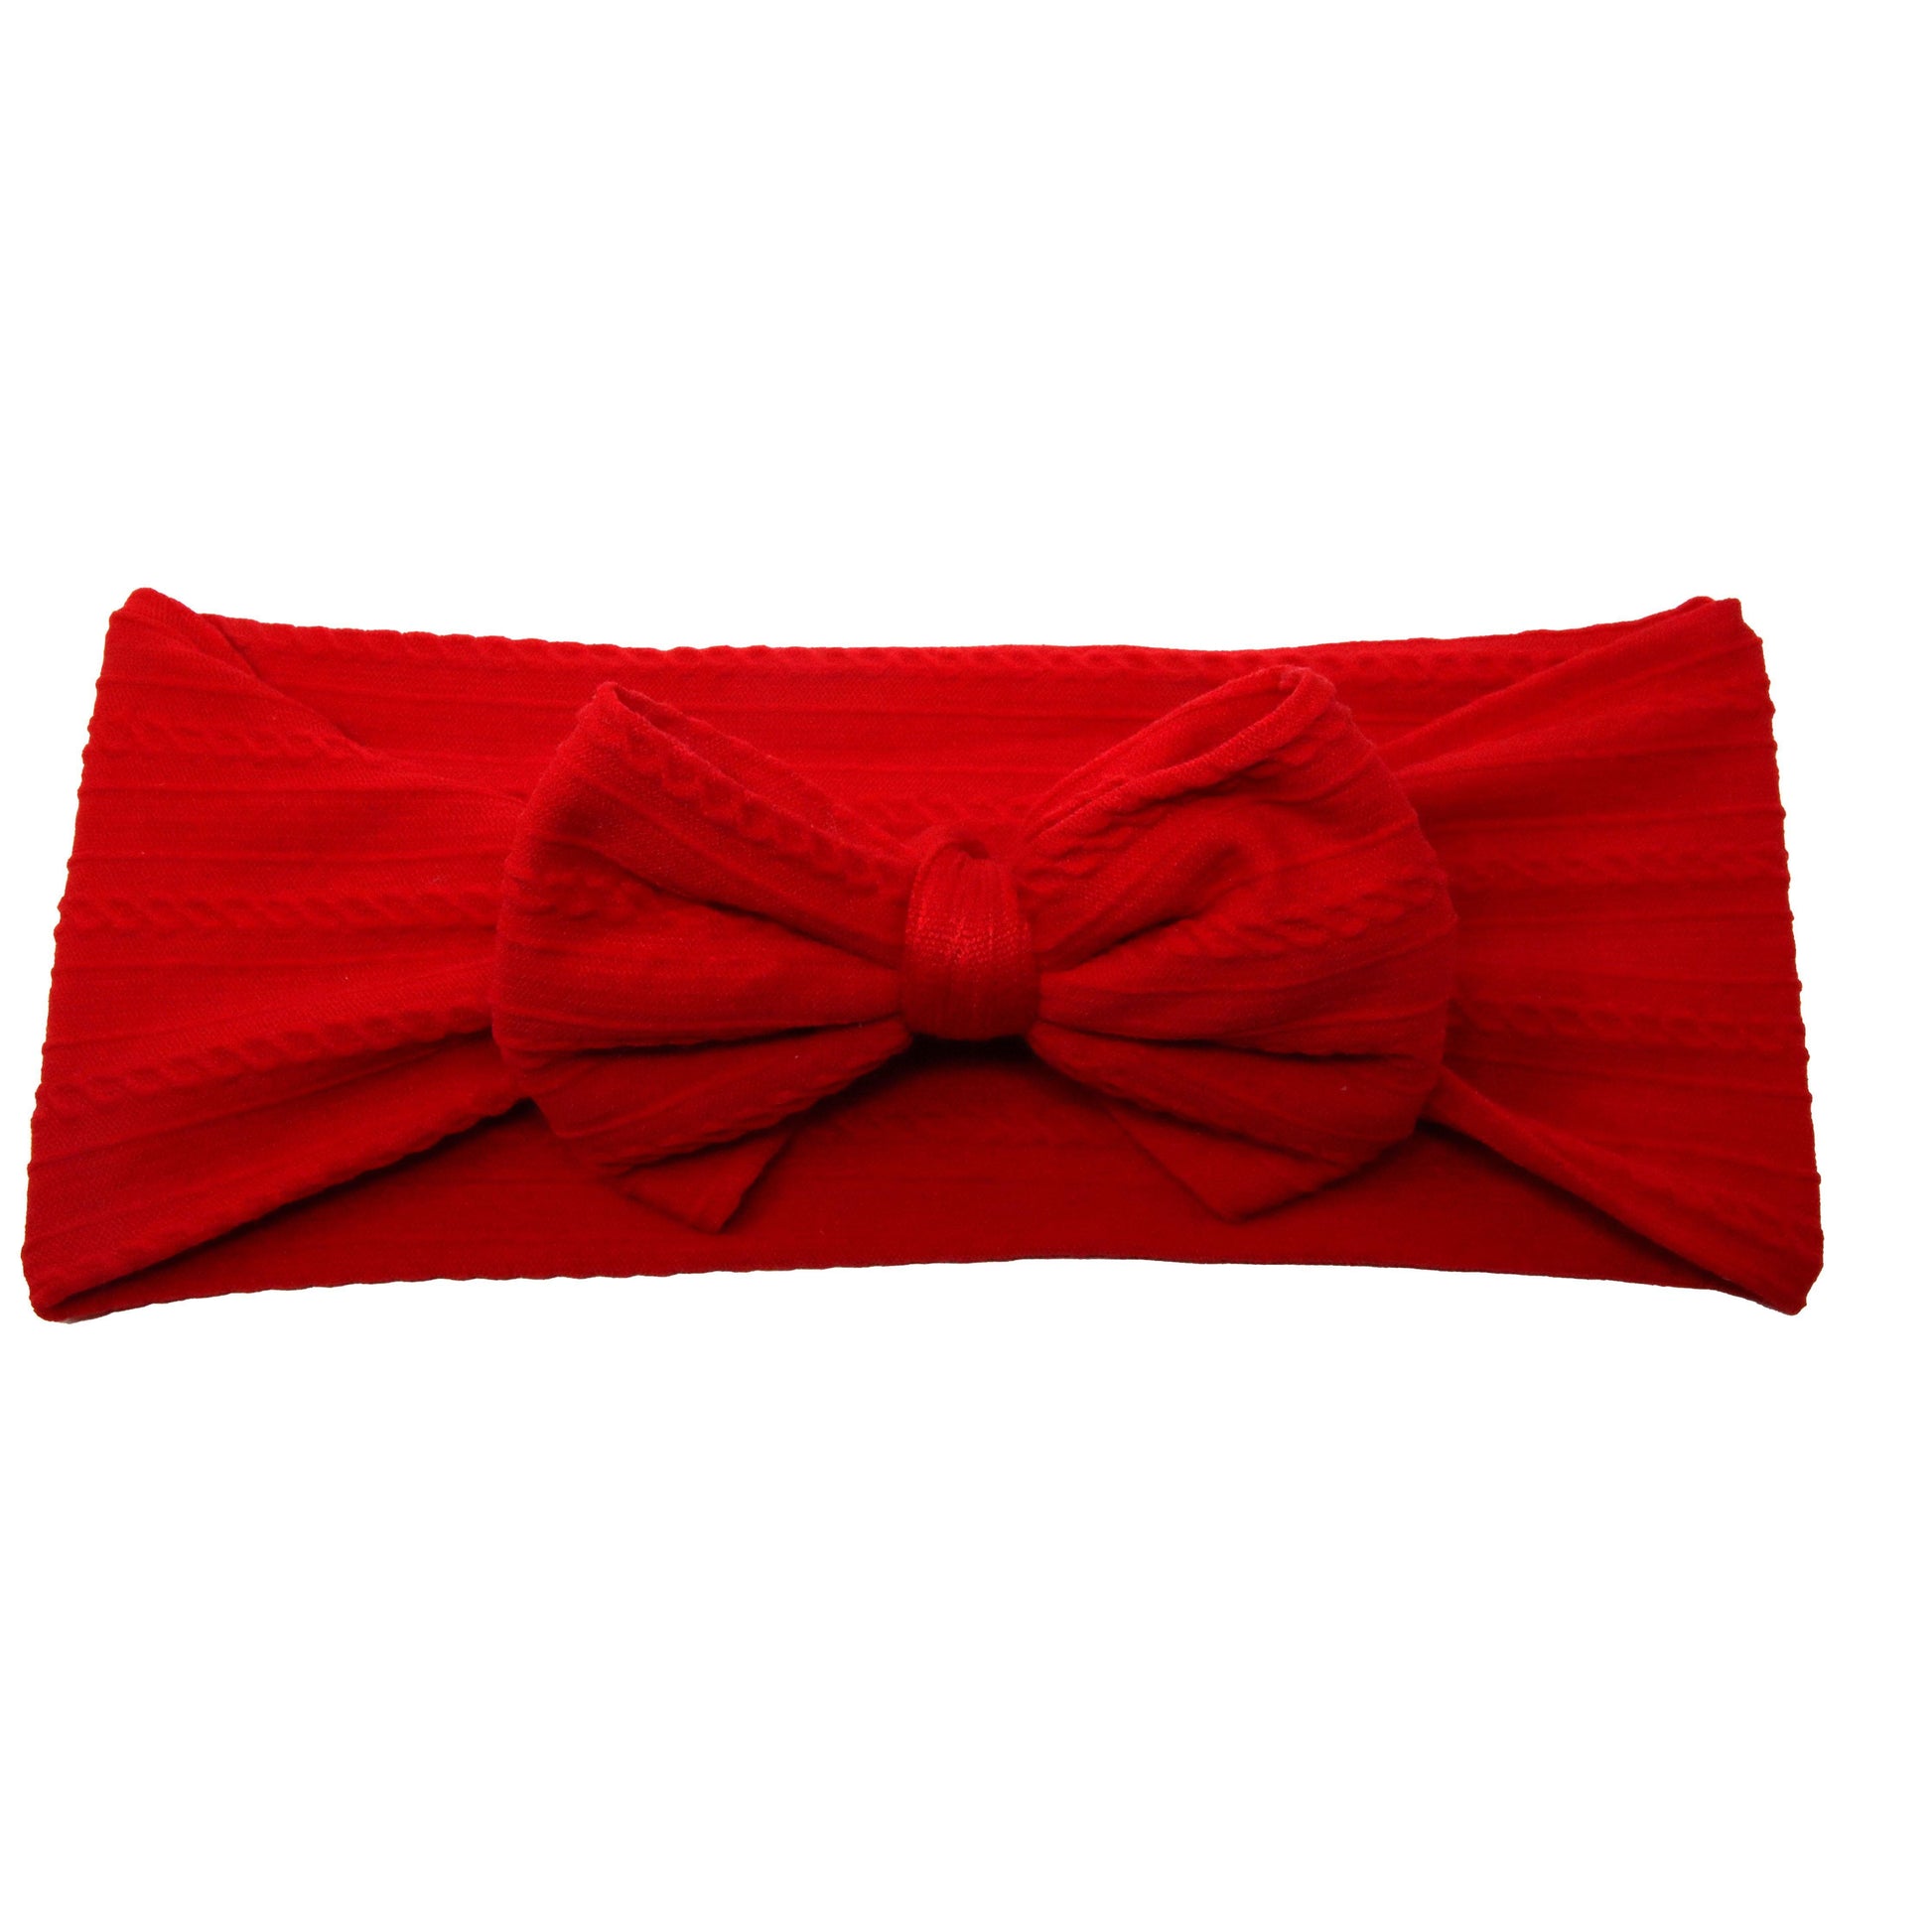 Red Braid Knit Bow Headwrap 4"